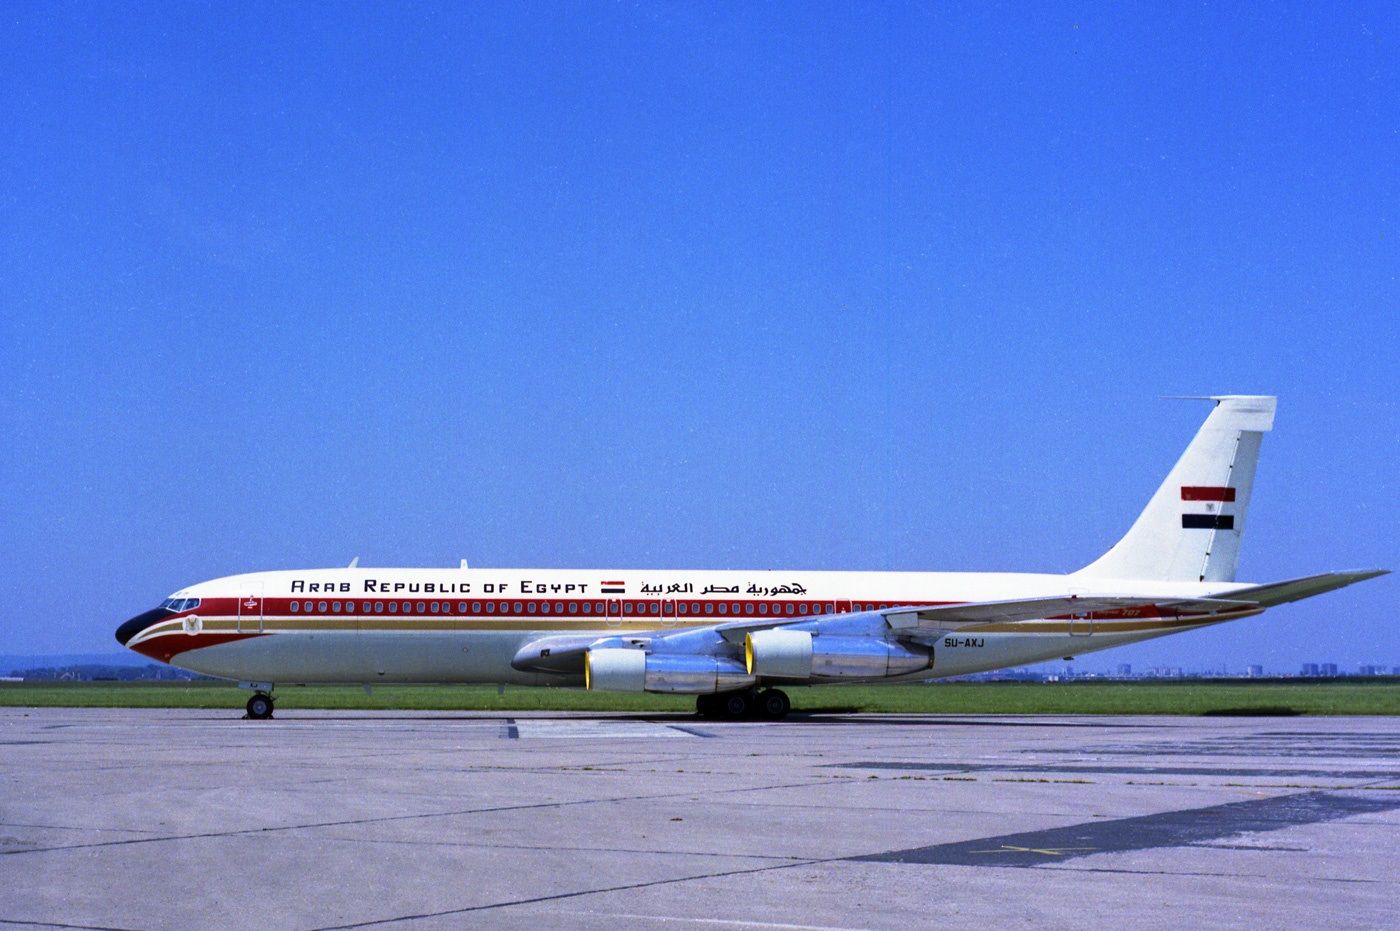 الطائرة المصرية في مطار بالعاصمة الفرنسية باريس في صورة ألتقطت في يونيو 1975 - airhistory.net